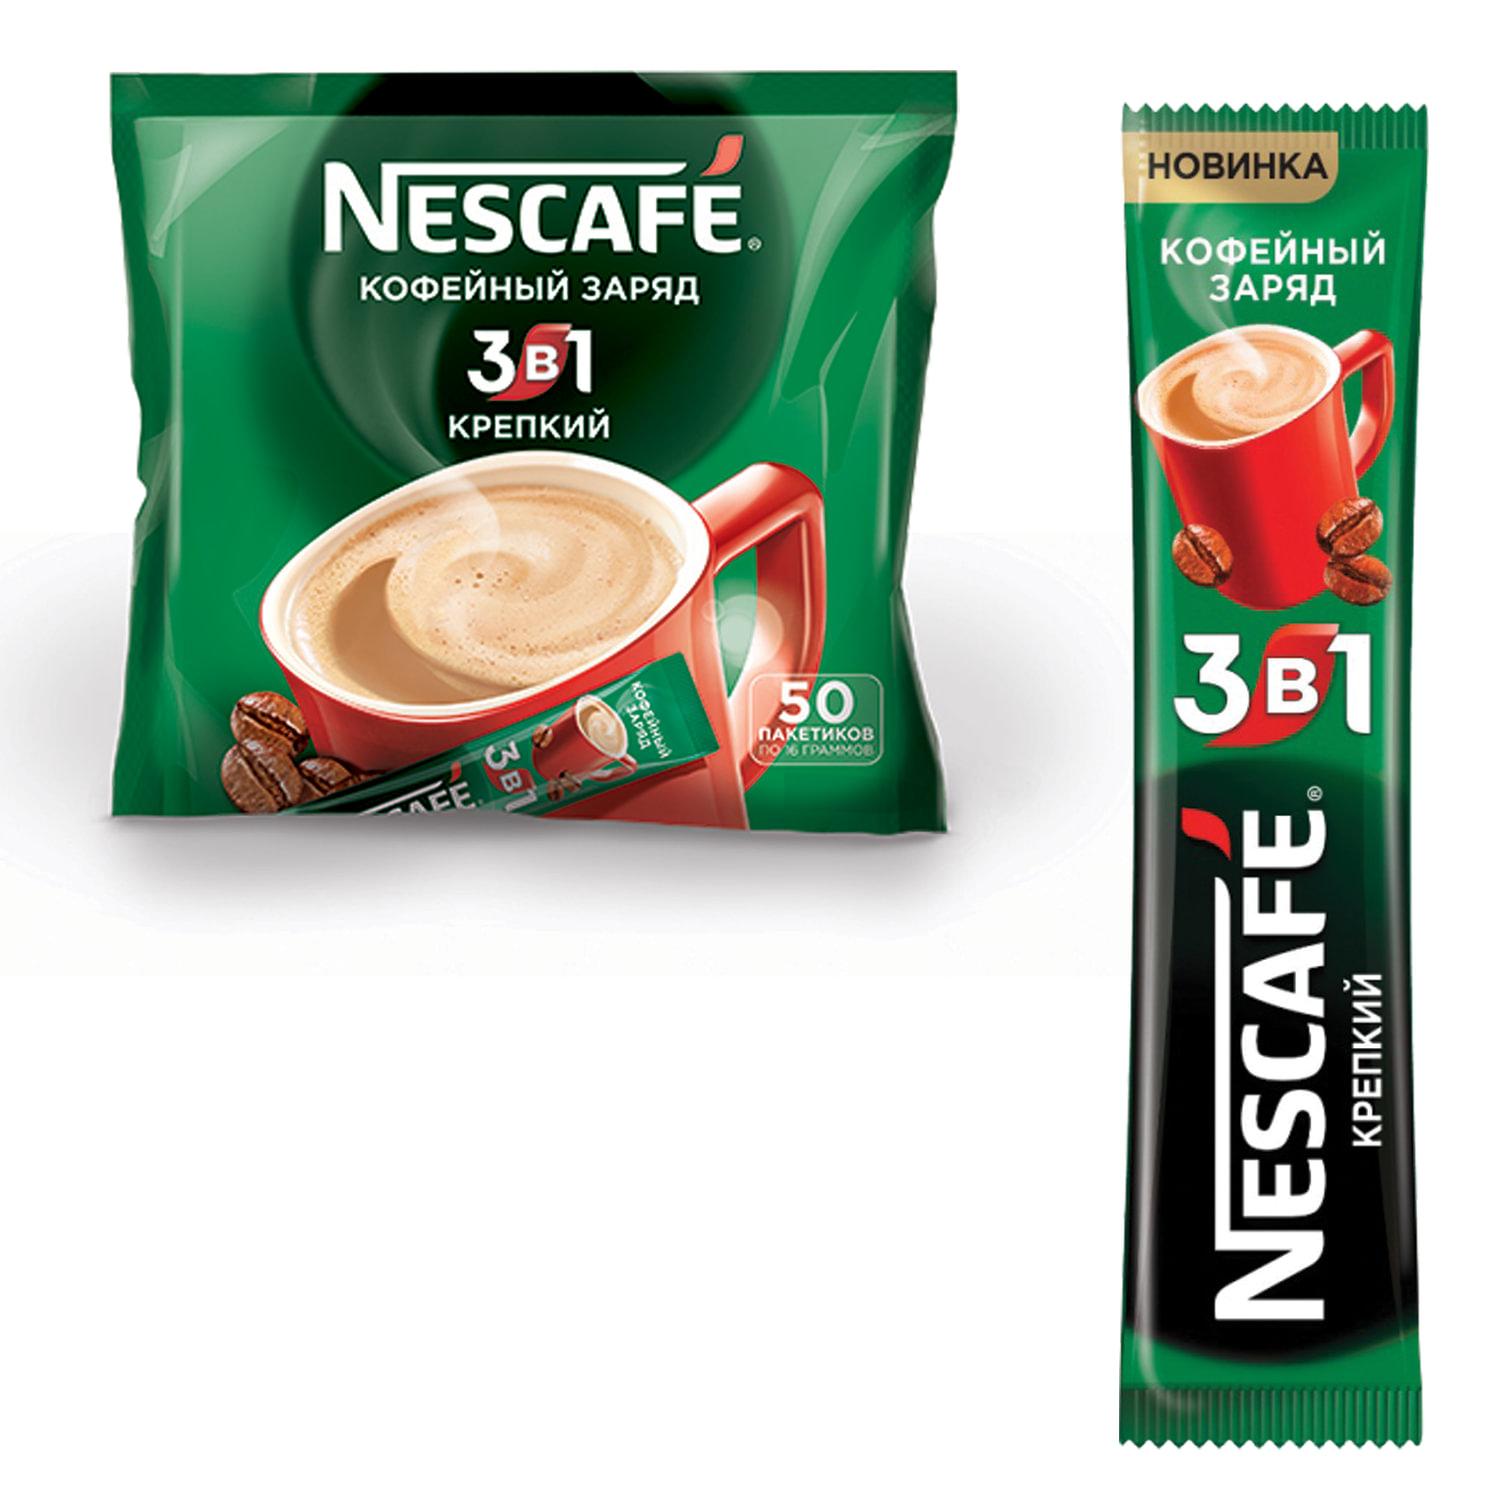 Кофе Нескафе в пакетиках 3 в 1